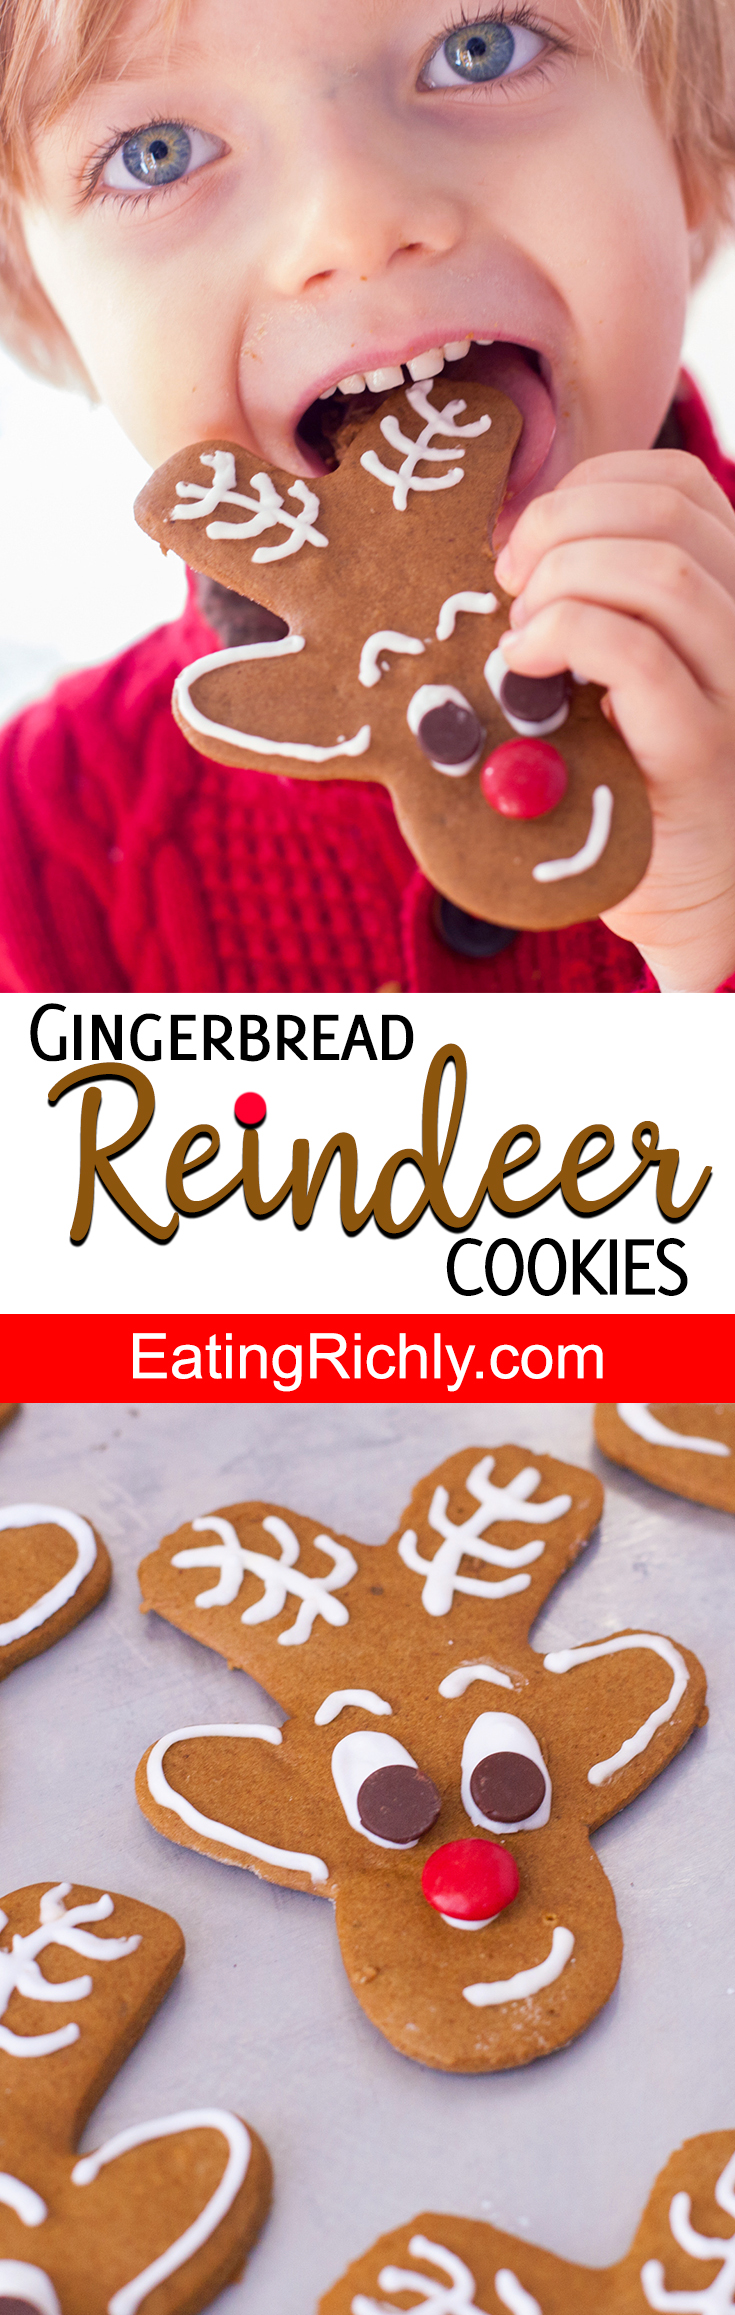 Reindeer Gingerbread Cookies Recipe